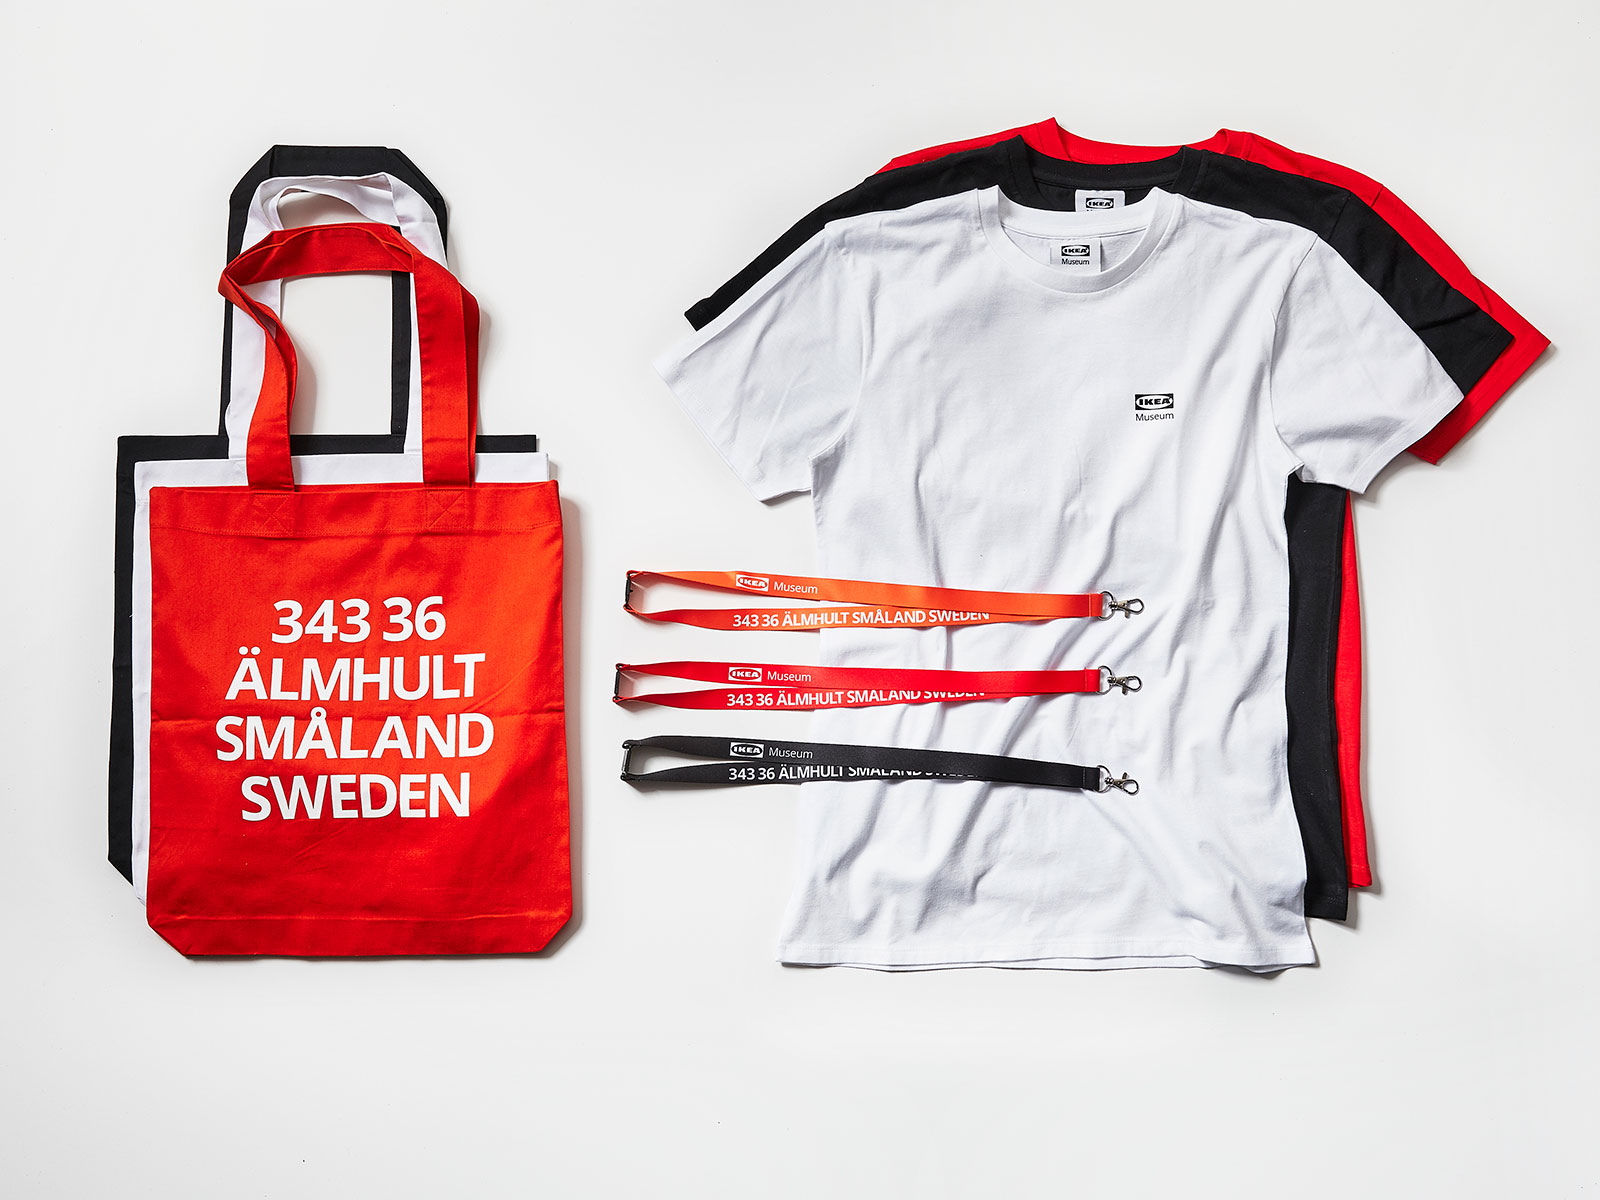 T-shirts, huvtröjor, brickor, termosar och tygkassar i rött, orange och svart med texten 343 36, ÄLMHULT SMÅLAND SWEDEN.